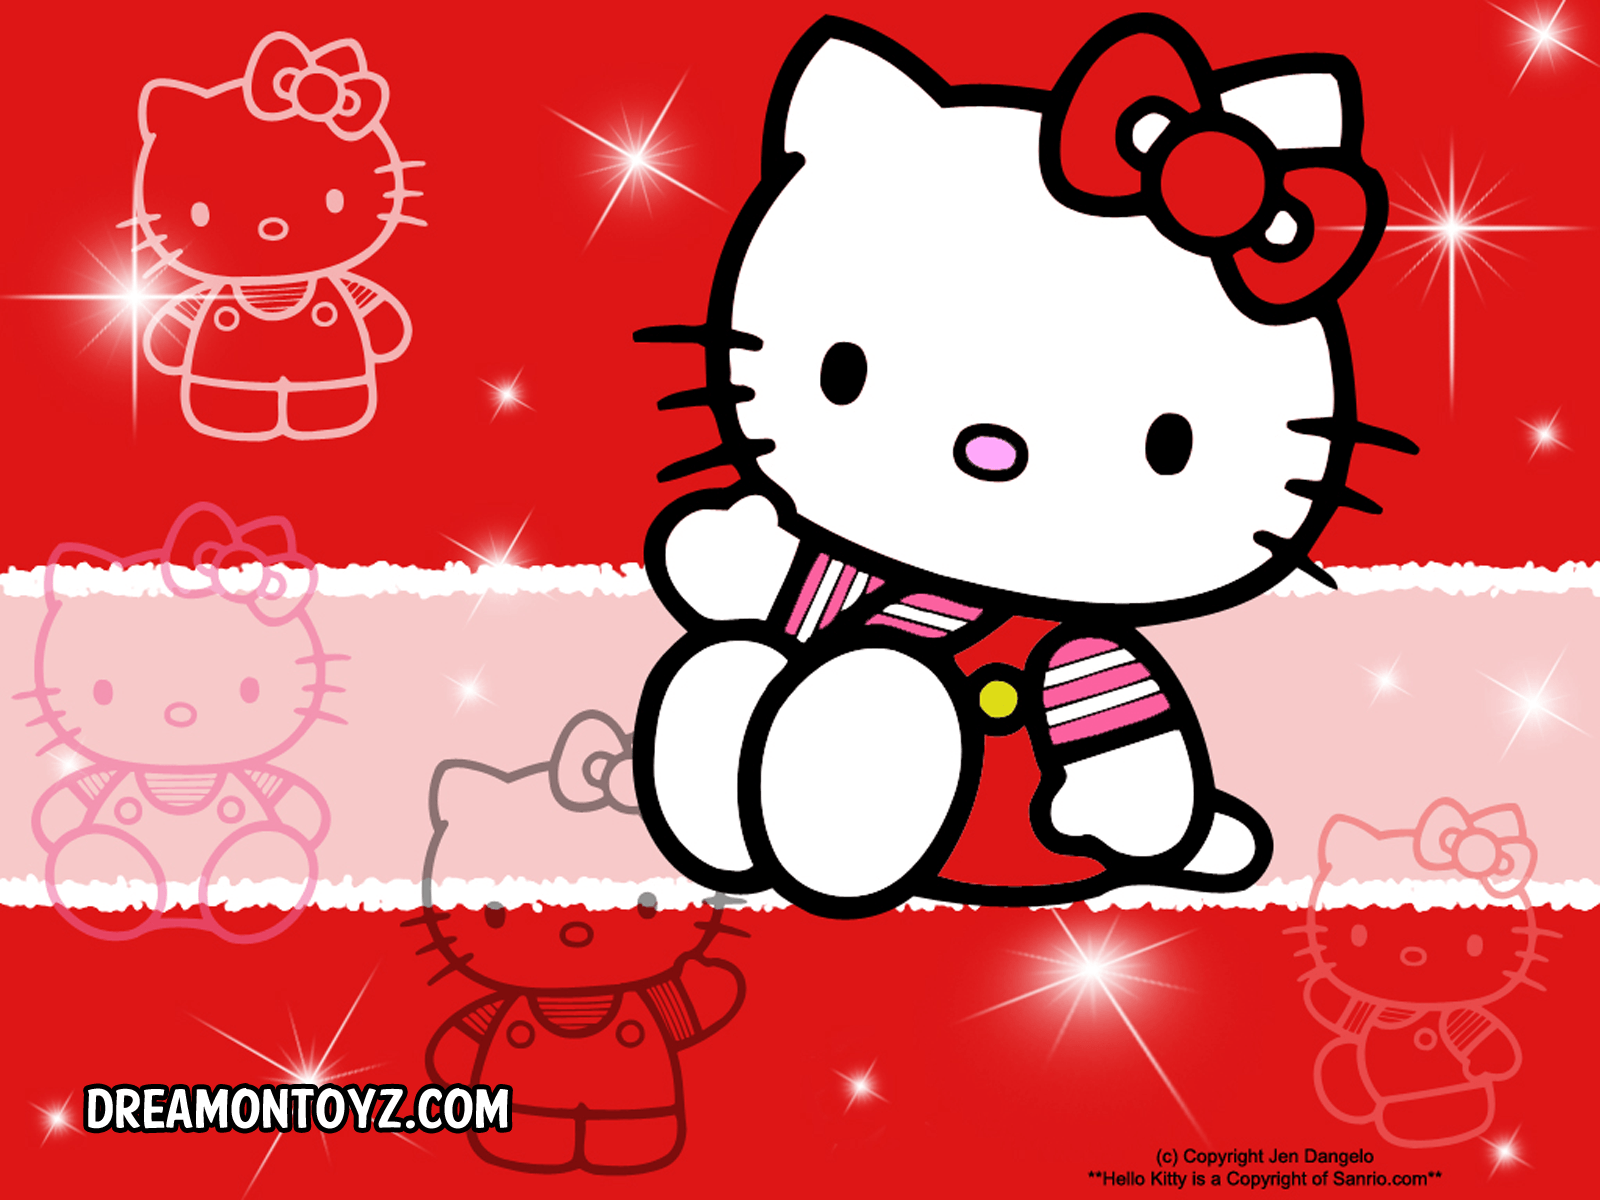 FREE Cartoon Graphics / Pics / Gifs / Photographs: Hello Kitty